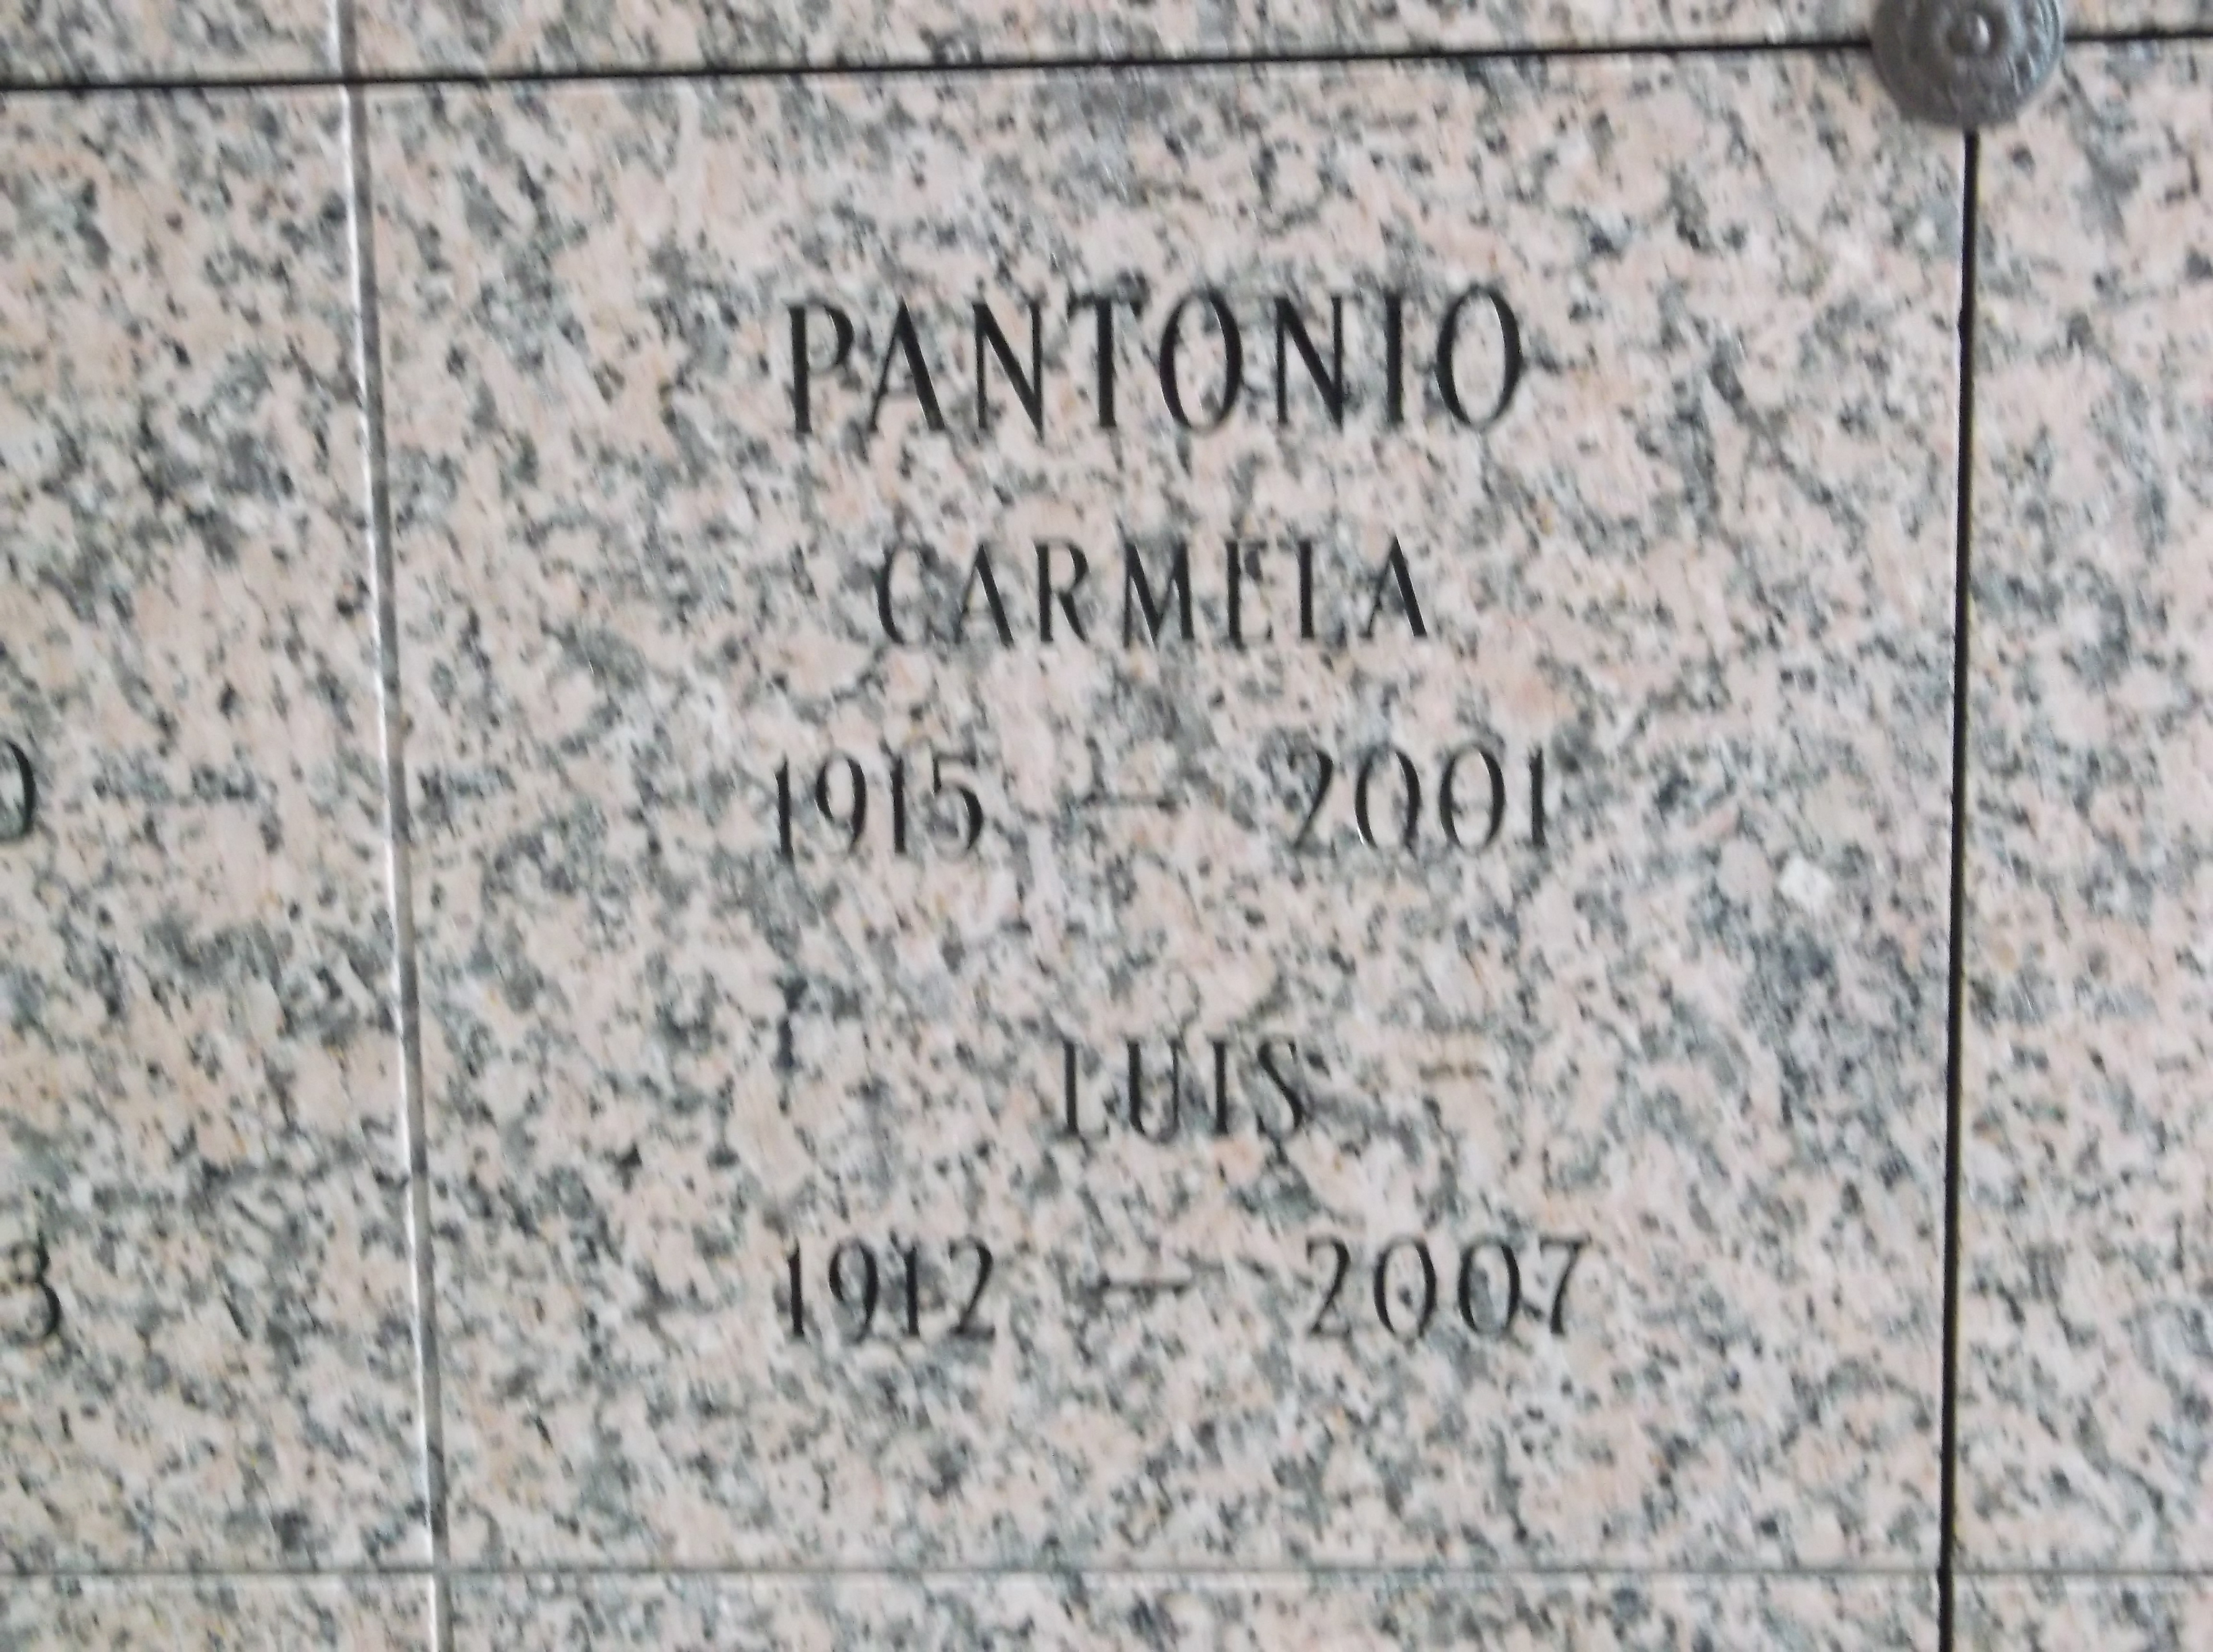 Carmela Pantonio